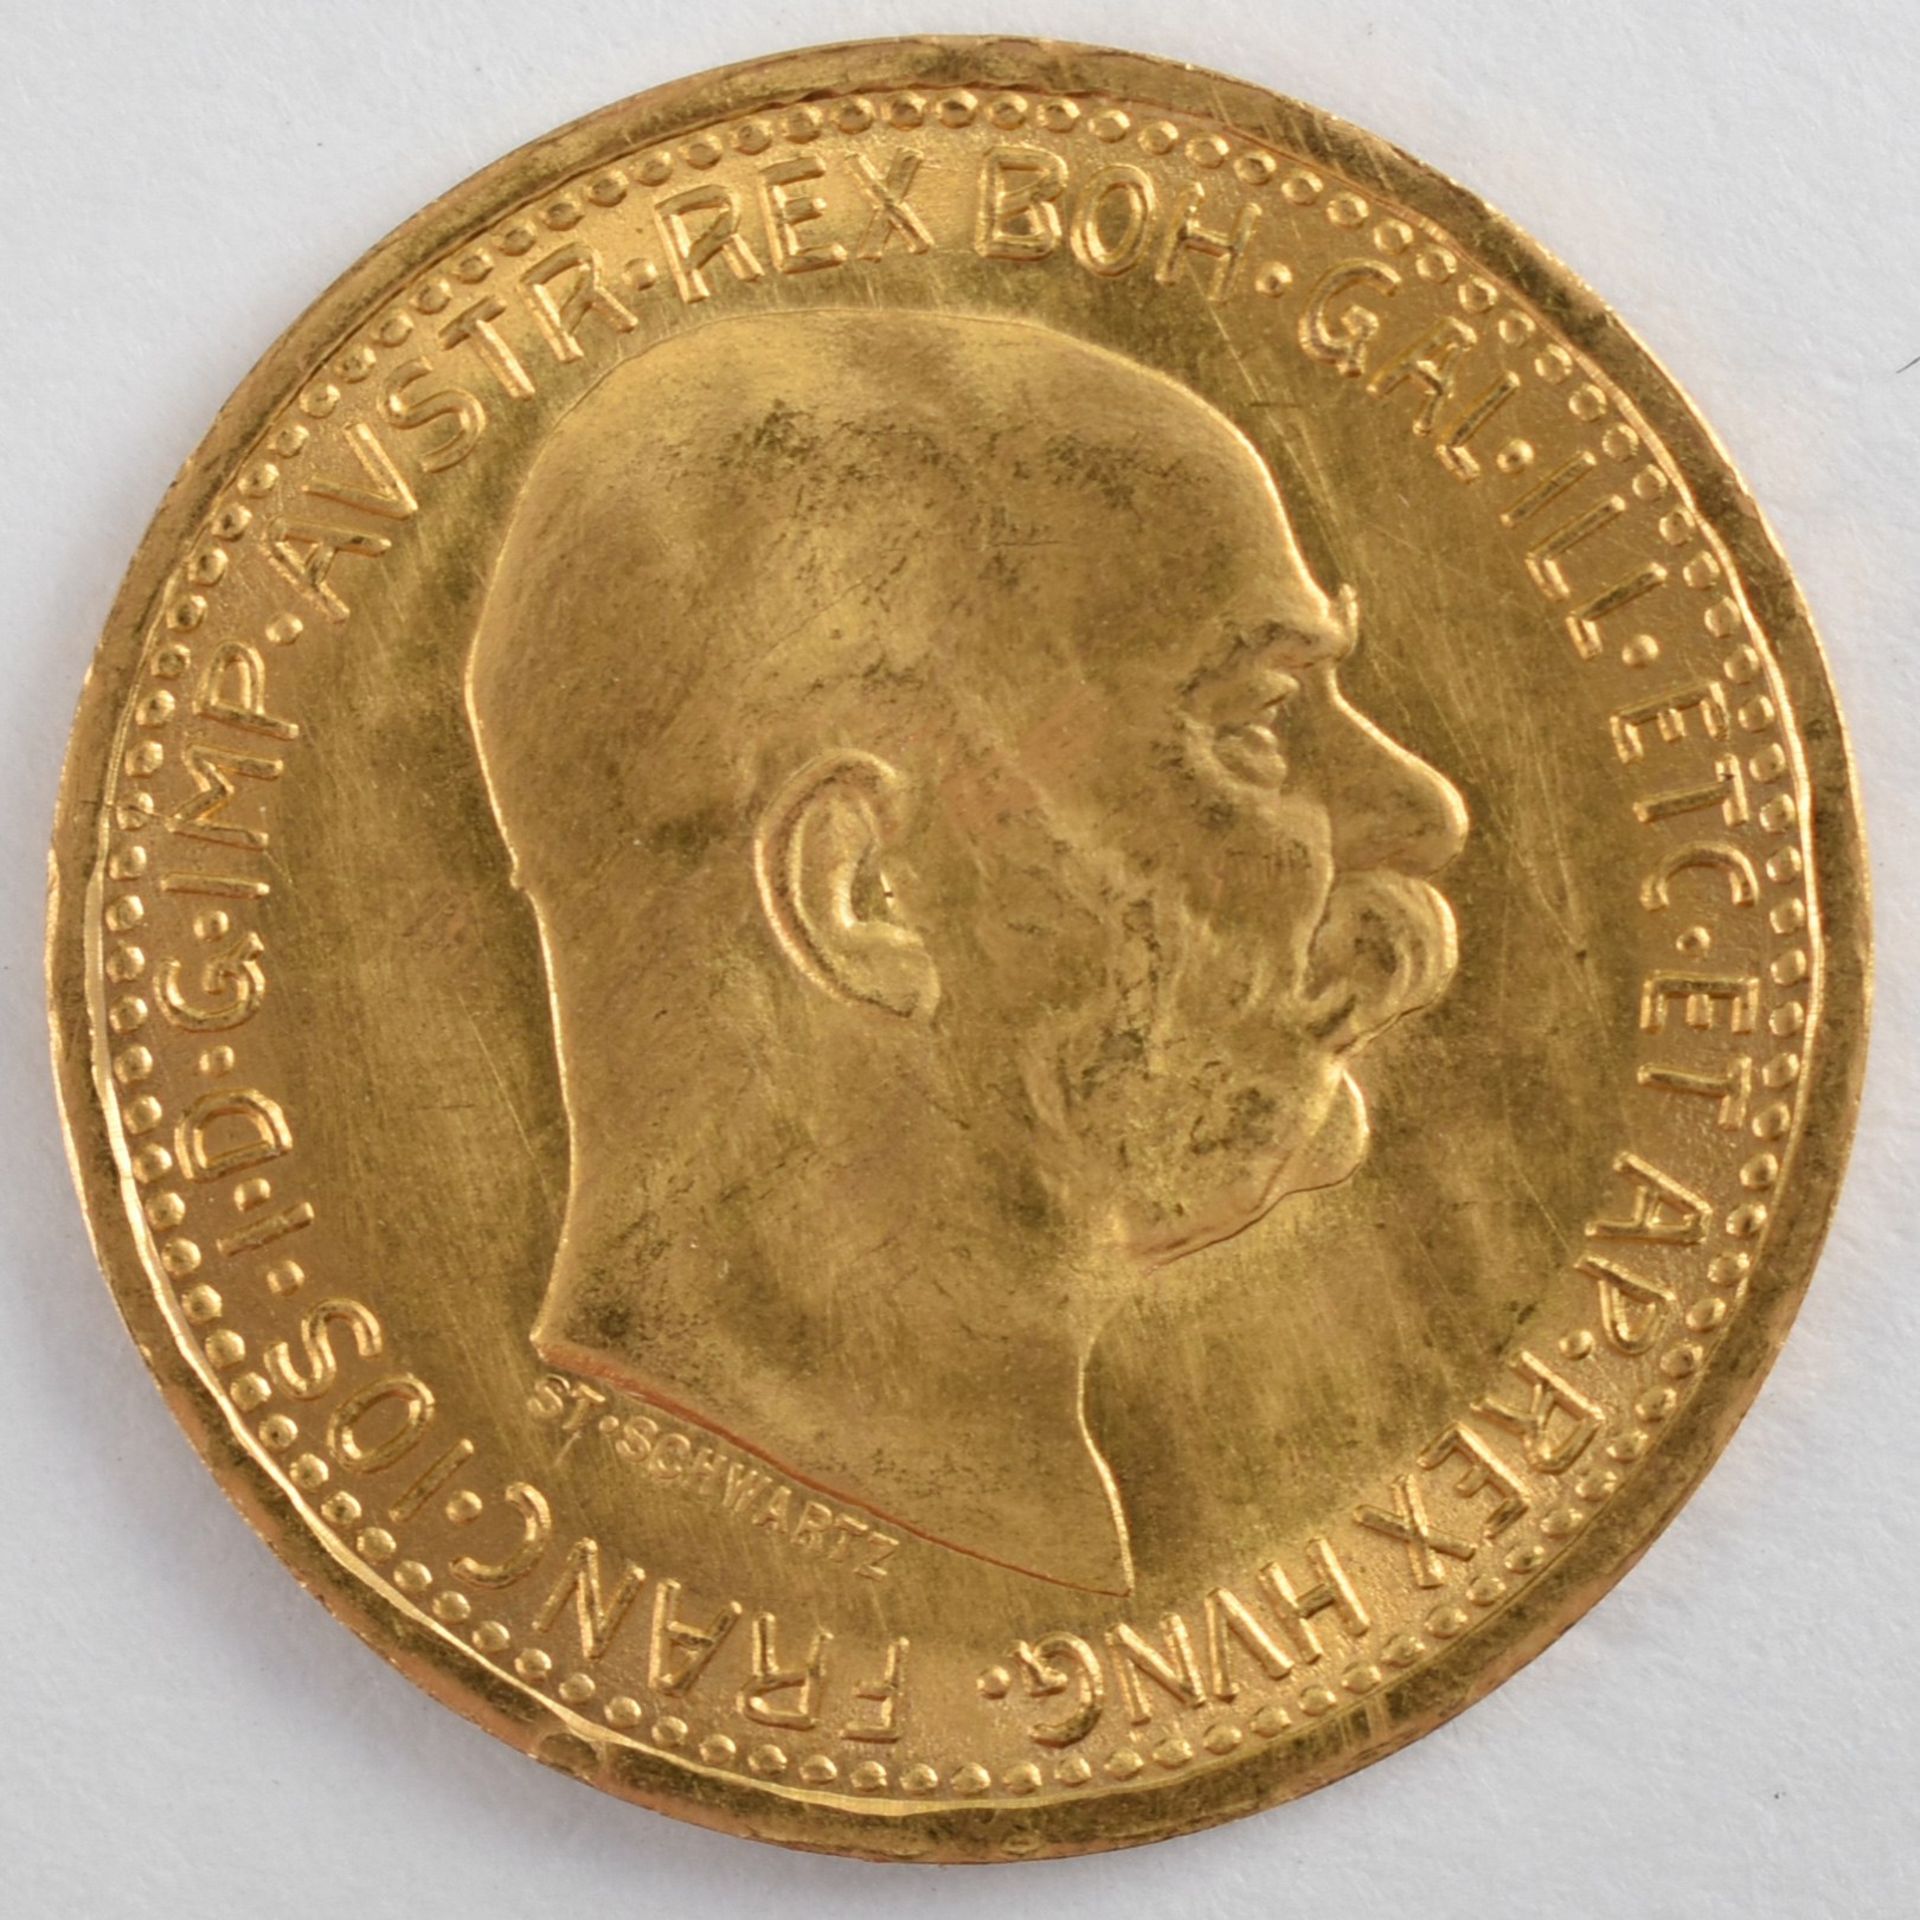 Goldmünze Österreich - Kaiserzeit 1912 10 Kronen in Gold, 900/1000, 3,387 g, D ca. 19 mm, av. Kaiser - Bild 2 aus 3